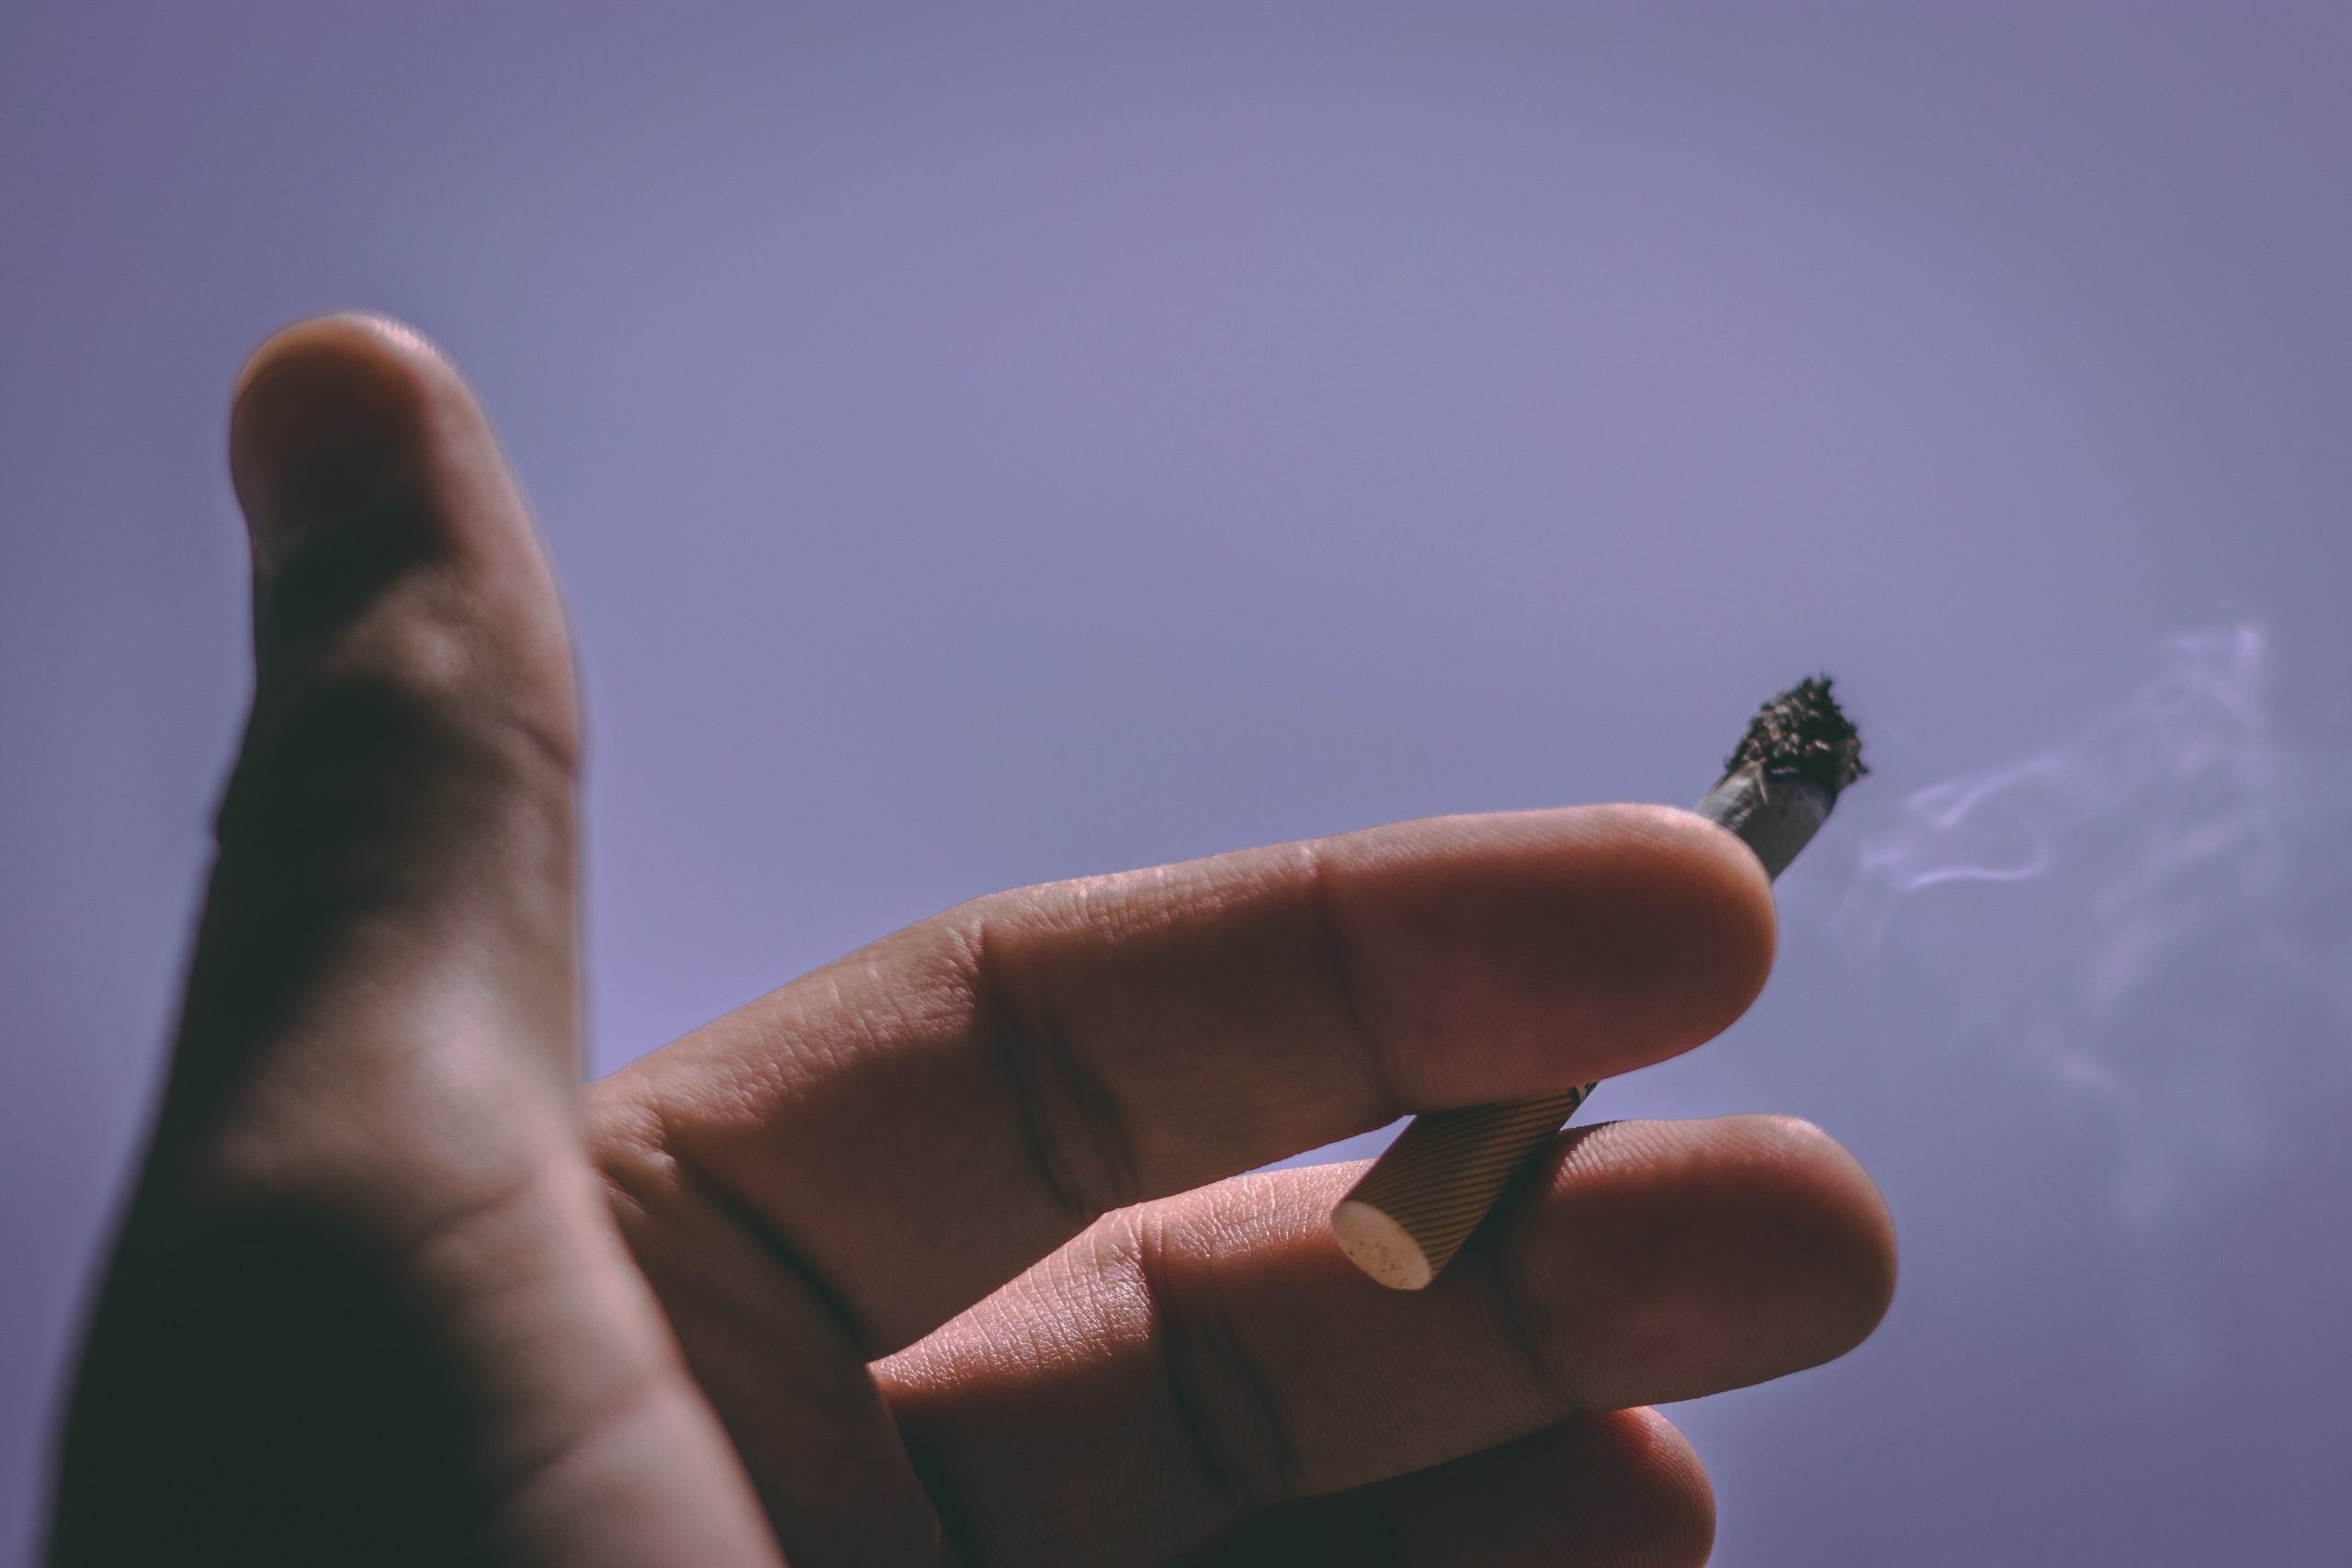 Ozonowanie usuwa nieprzyjemne zapachy dymu papierosowego - na obrazku widać rękę z papierosem pomiędzy palcami na tle fioletowego nieba